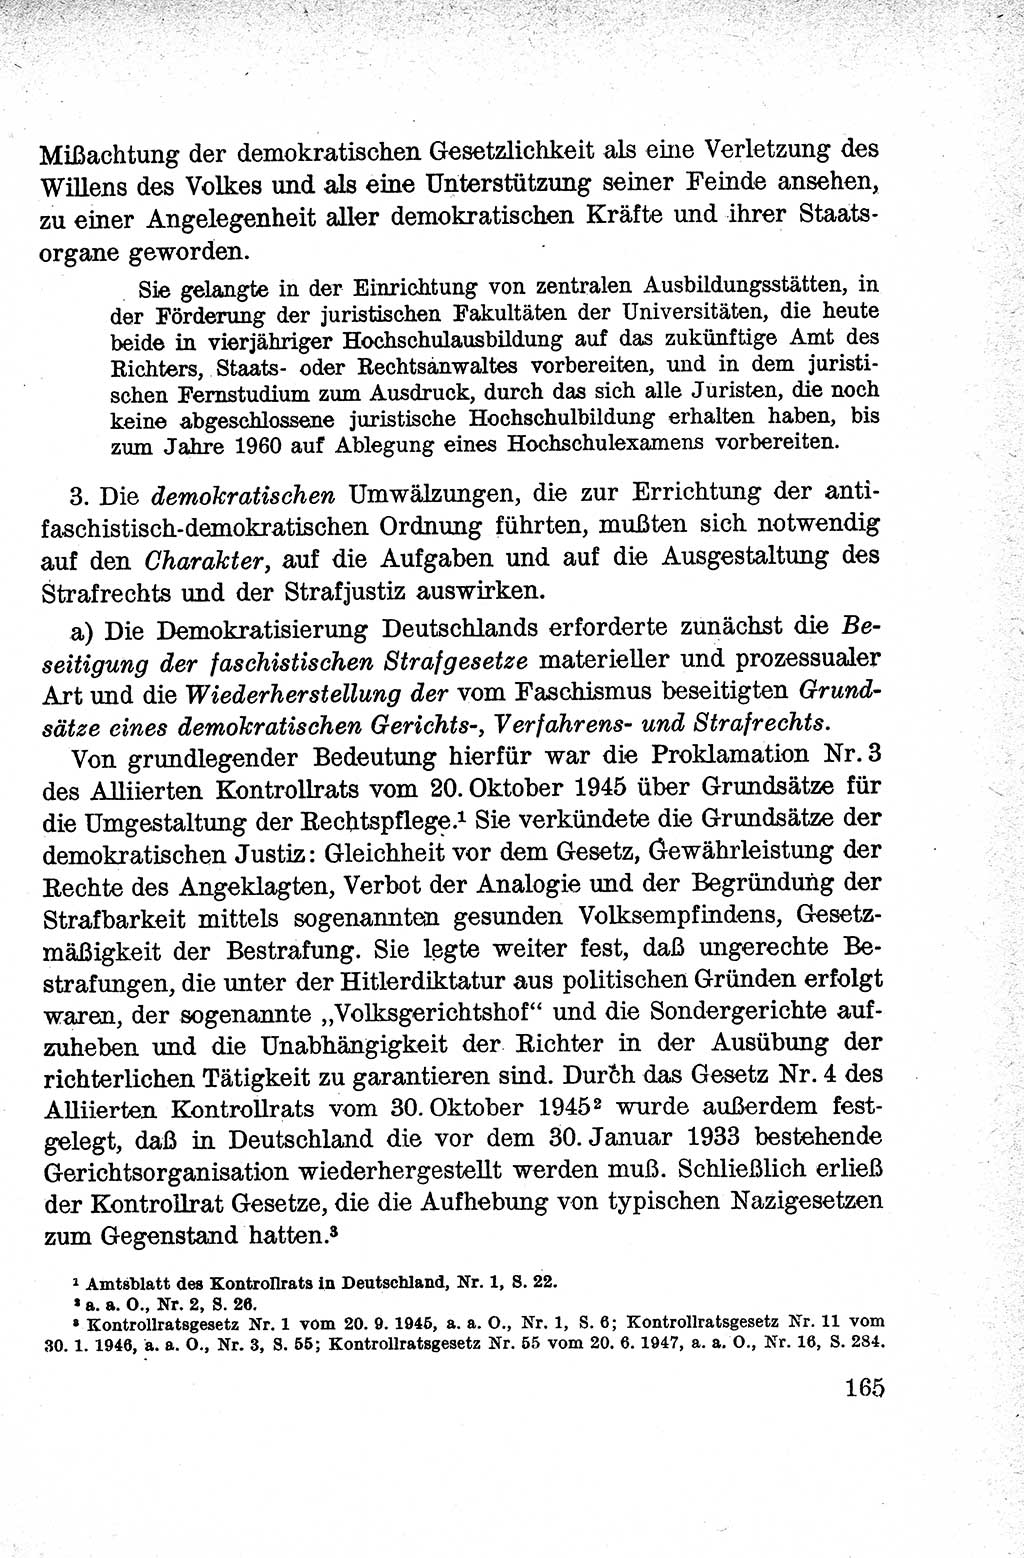 Lehrbuch des Strafrechts der Deutschen Demokratischen Republik (DDR), Allgemeiner Teil 1959, Seite 165 (Lb. Strafr. DDR AT 1959, S. 165)